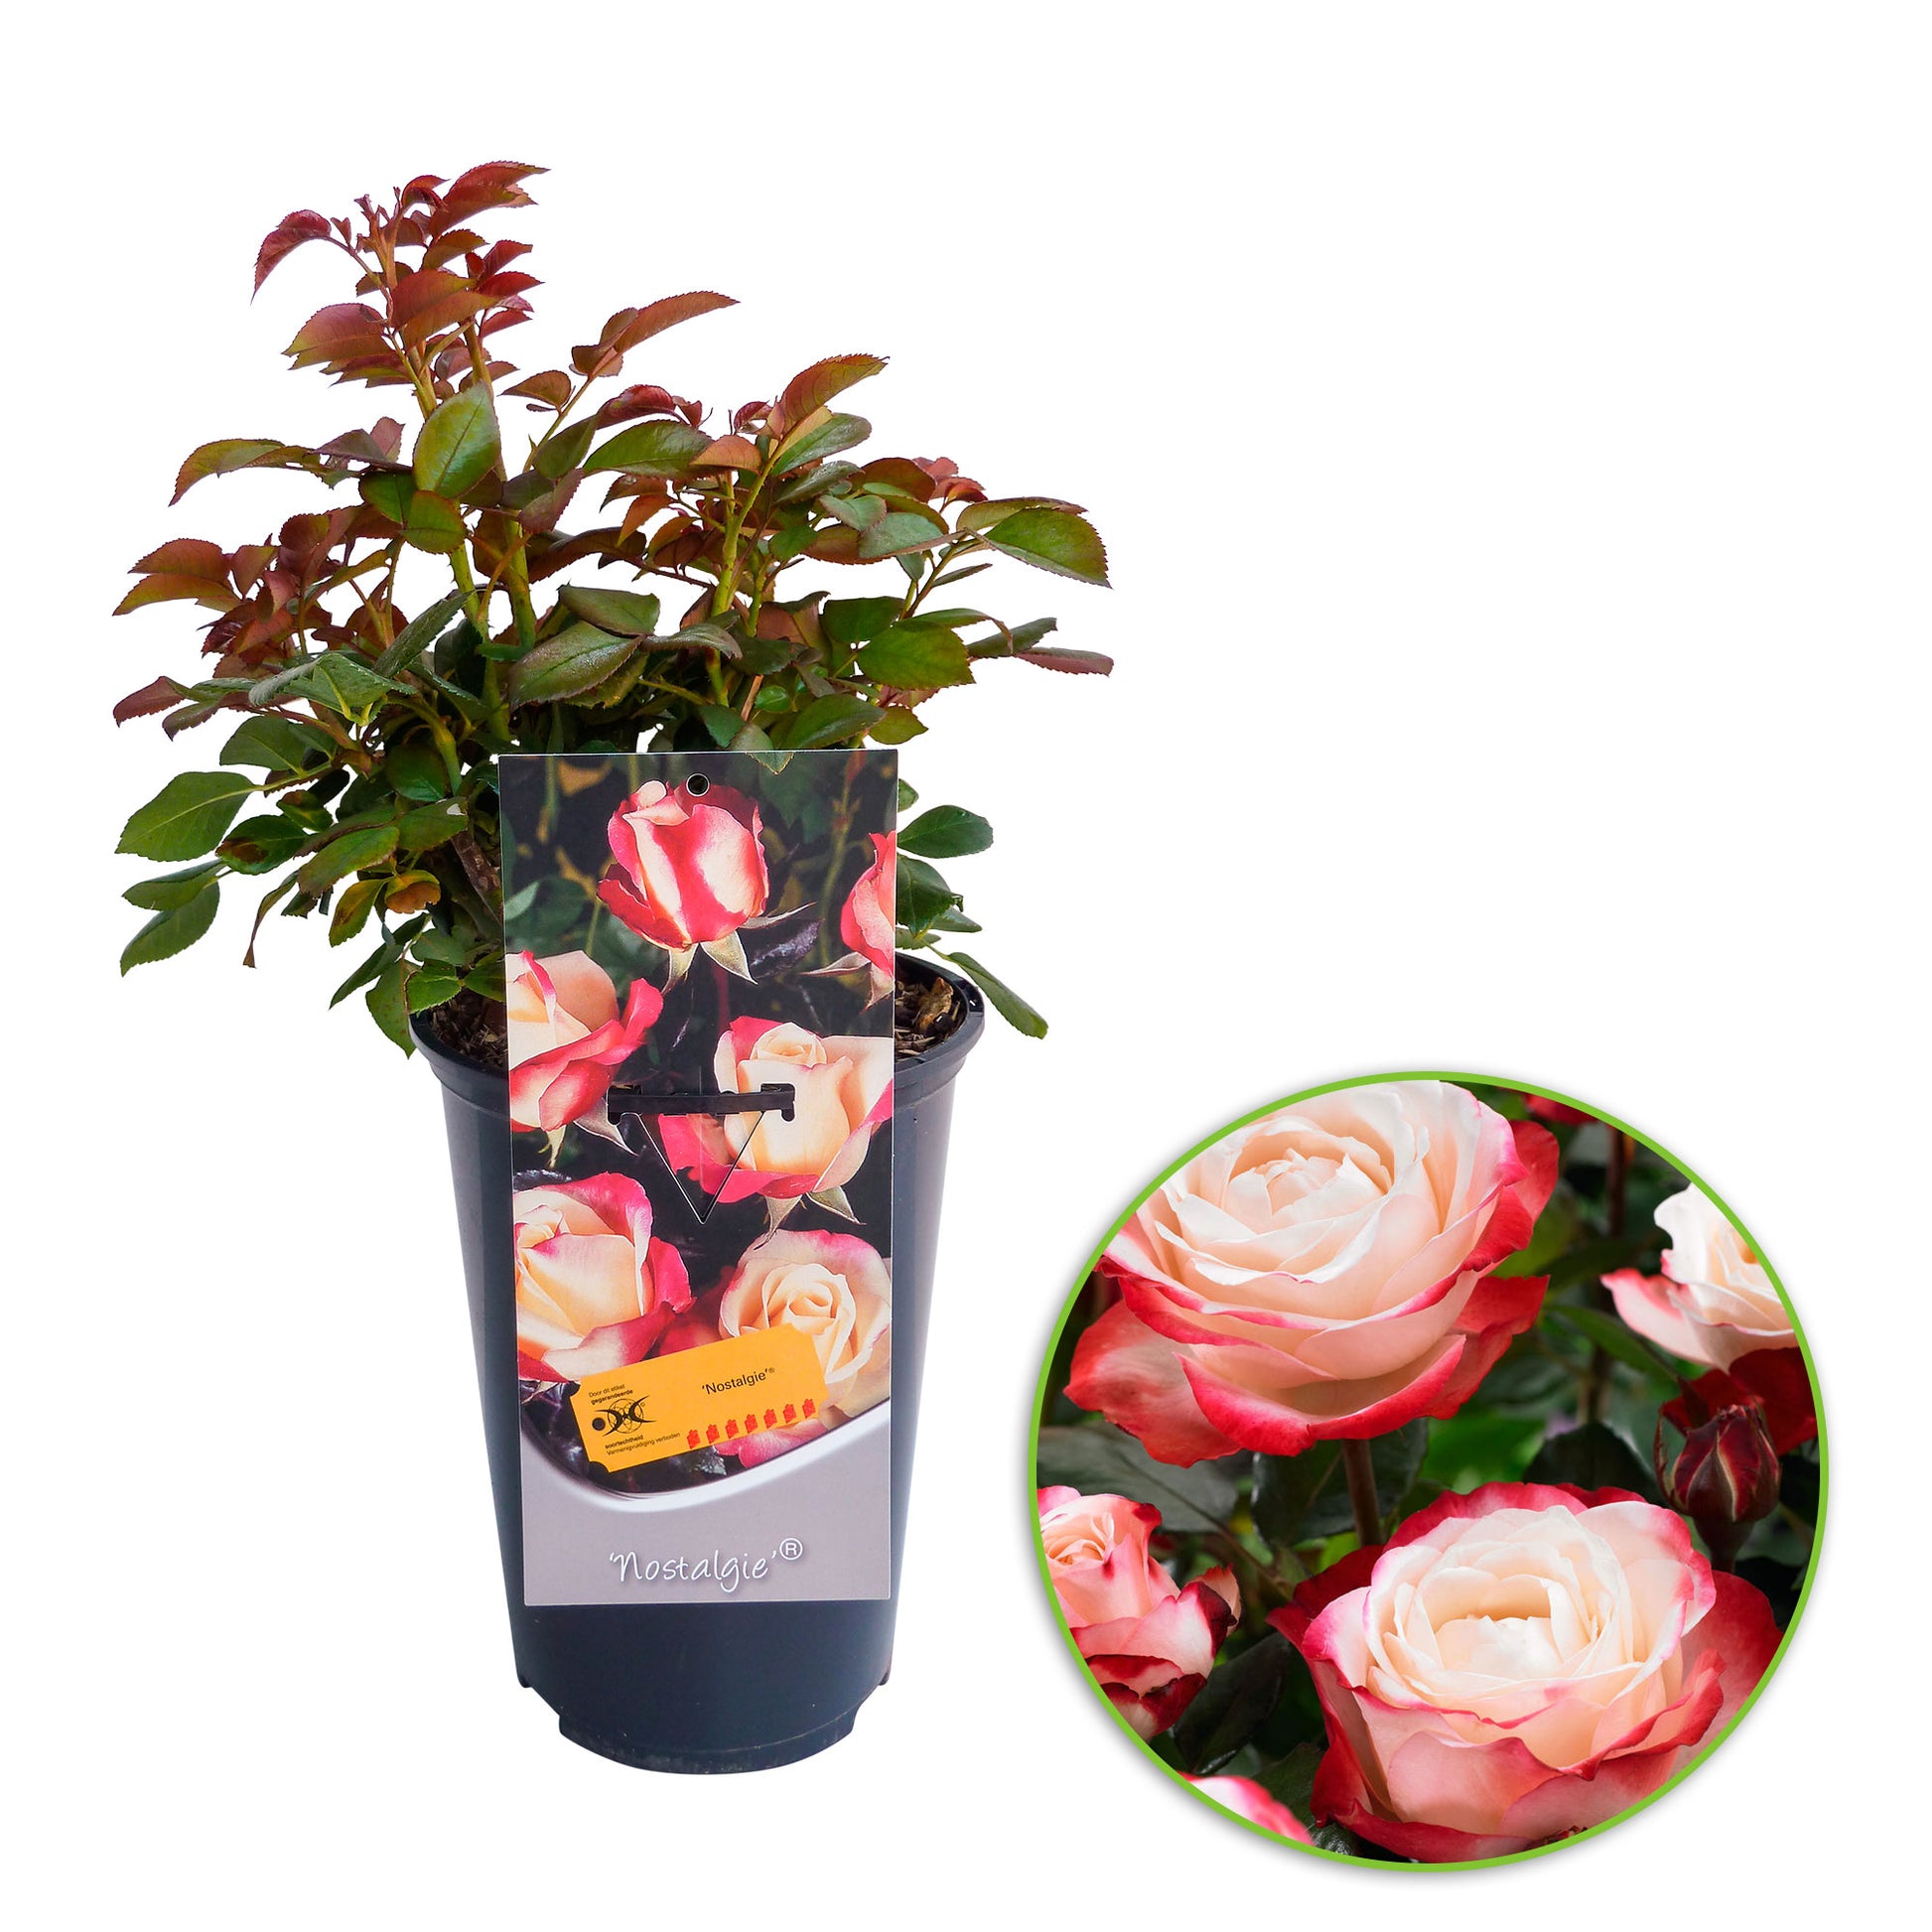 Creme-Rosa Rose Rosa - Großblütige \'Nostalgie\'® kaufen Winterhart